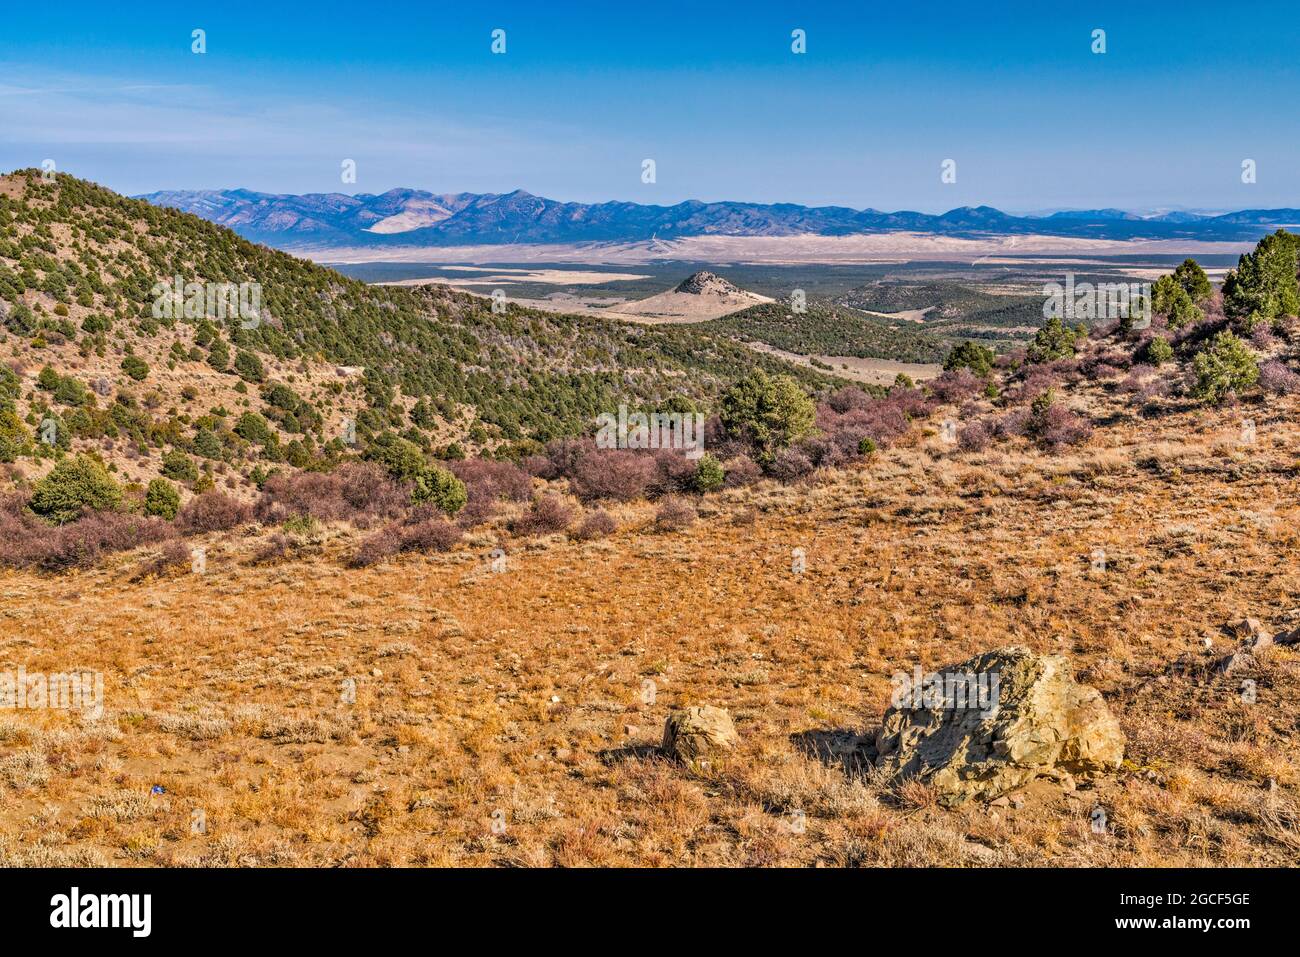 Wah Wah Mountains, view from Indian Peak Range, Great Basin Desert, near Modena, Utah, USA Stock Photo